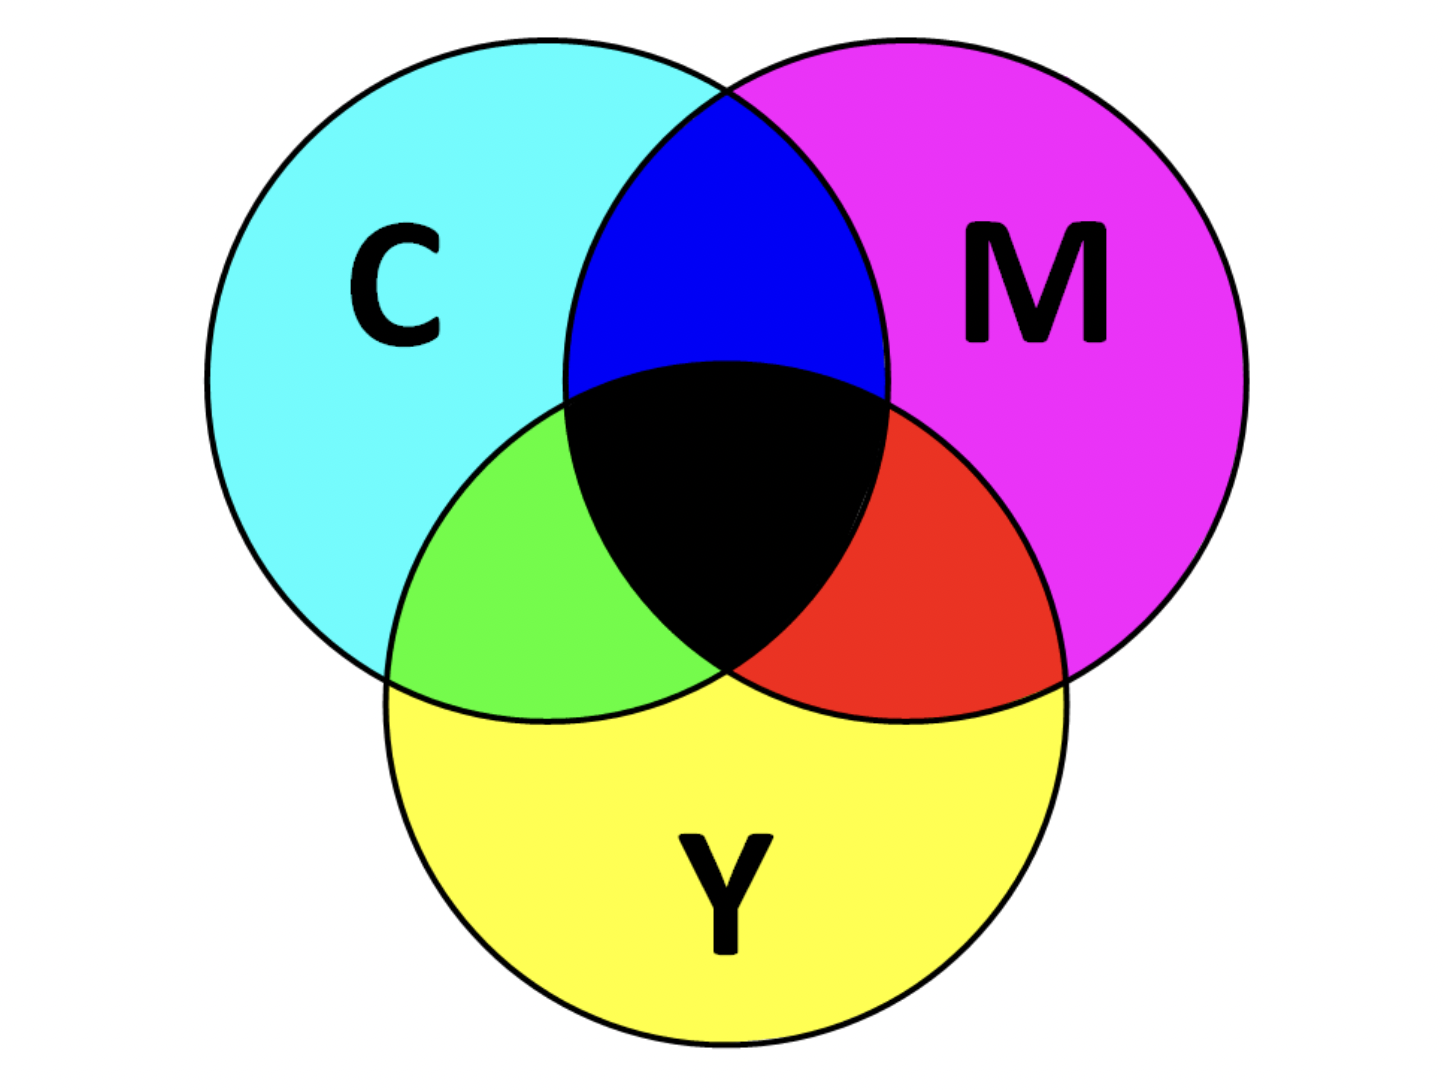 Cmyk 2. Цветовая модель ЦМИК. Цветовая модель Смук. Цветовая модель CMY (K). Модель Смук цвета.